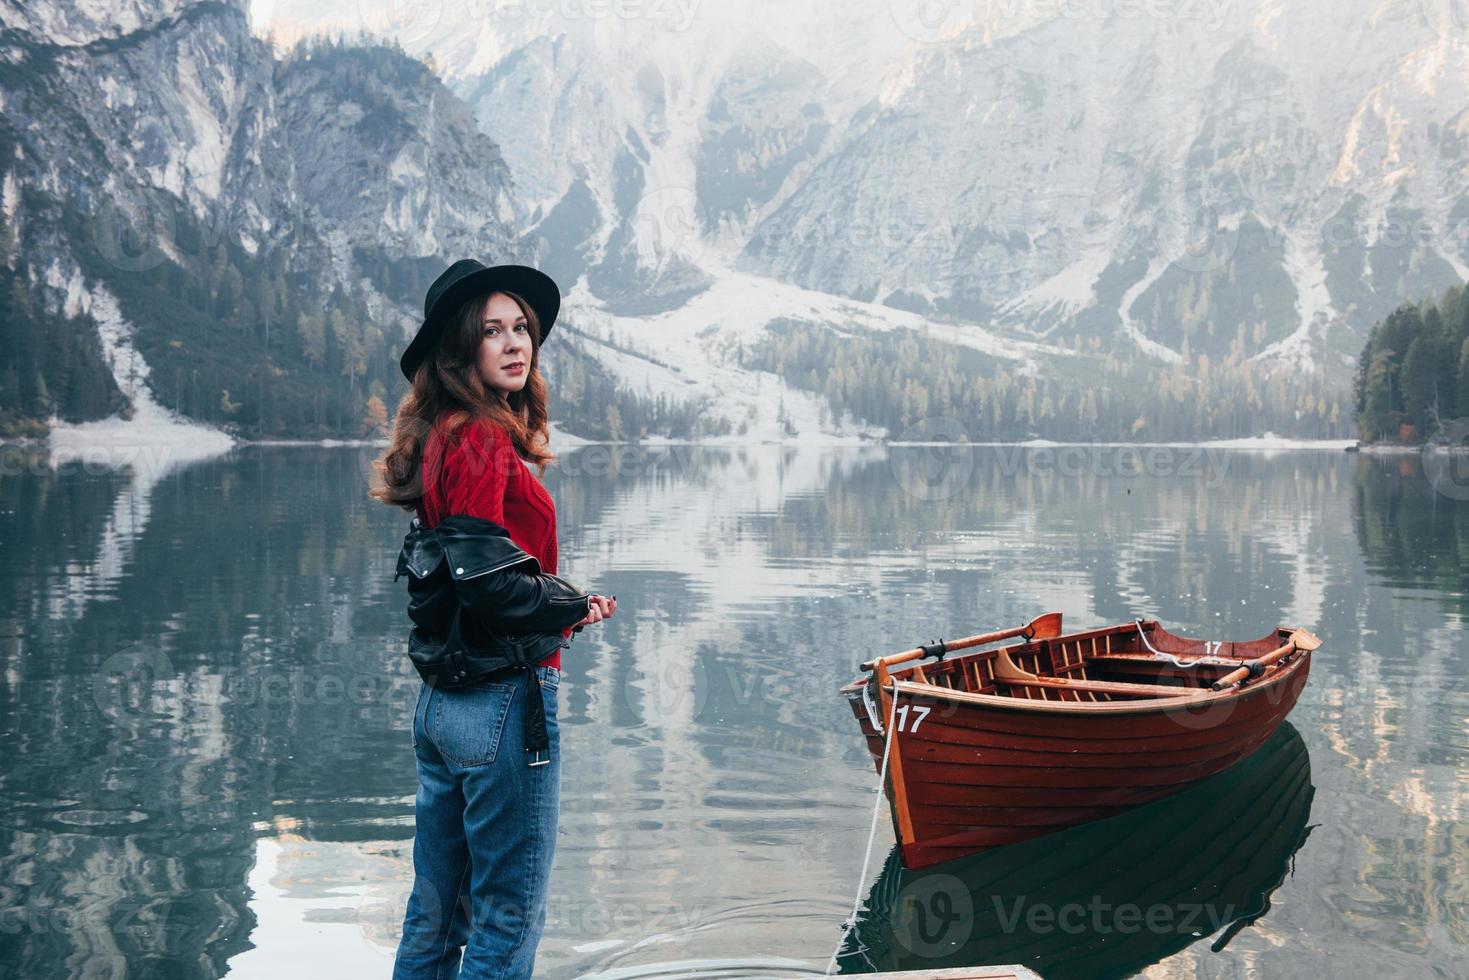 flicka tittar bakom. enastående utsikt. kvinna i svart hatt njuter av majestätiska bergslandskap nära sjön med båt foto